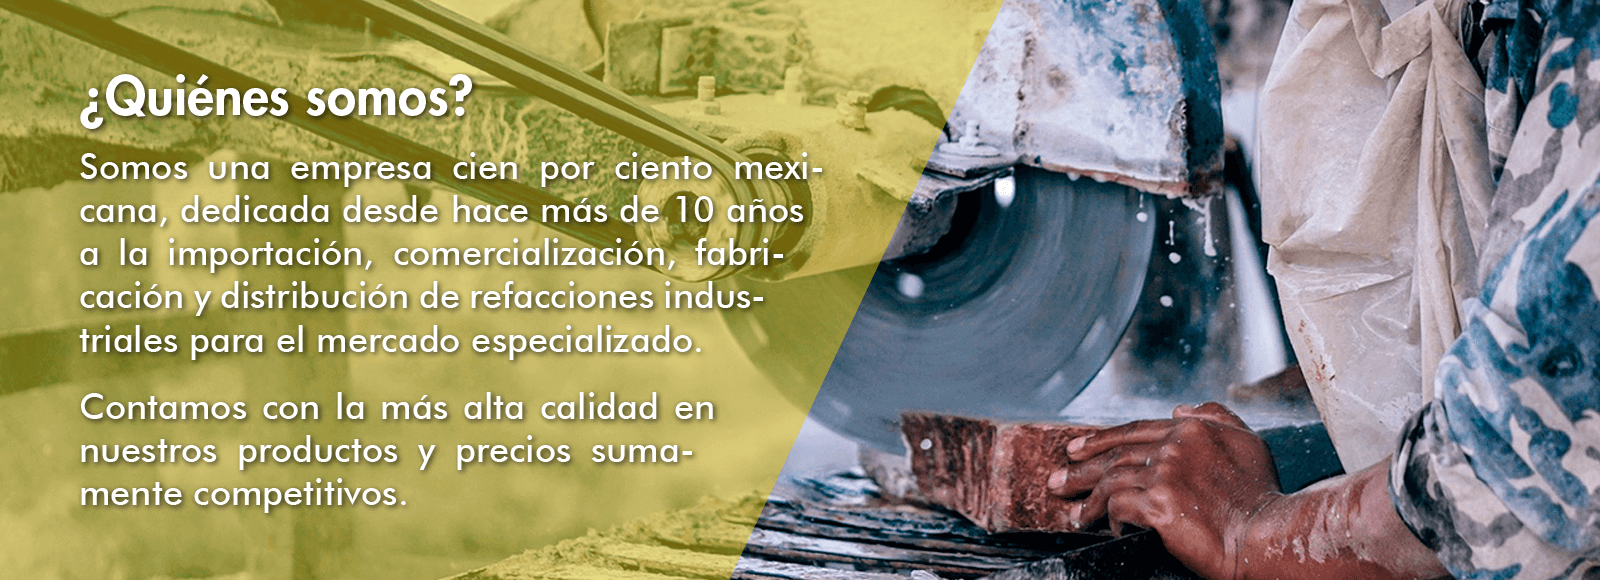 Empresa mexicana dedicada a importaci\xf3n, comercializaci\xf3n, fabricaci\xf3n y distribuci\xf3n de refacciones industriales para el mercado especializado